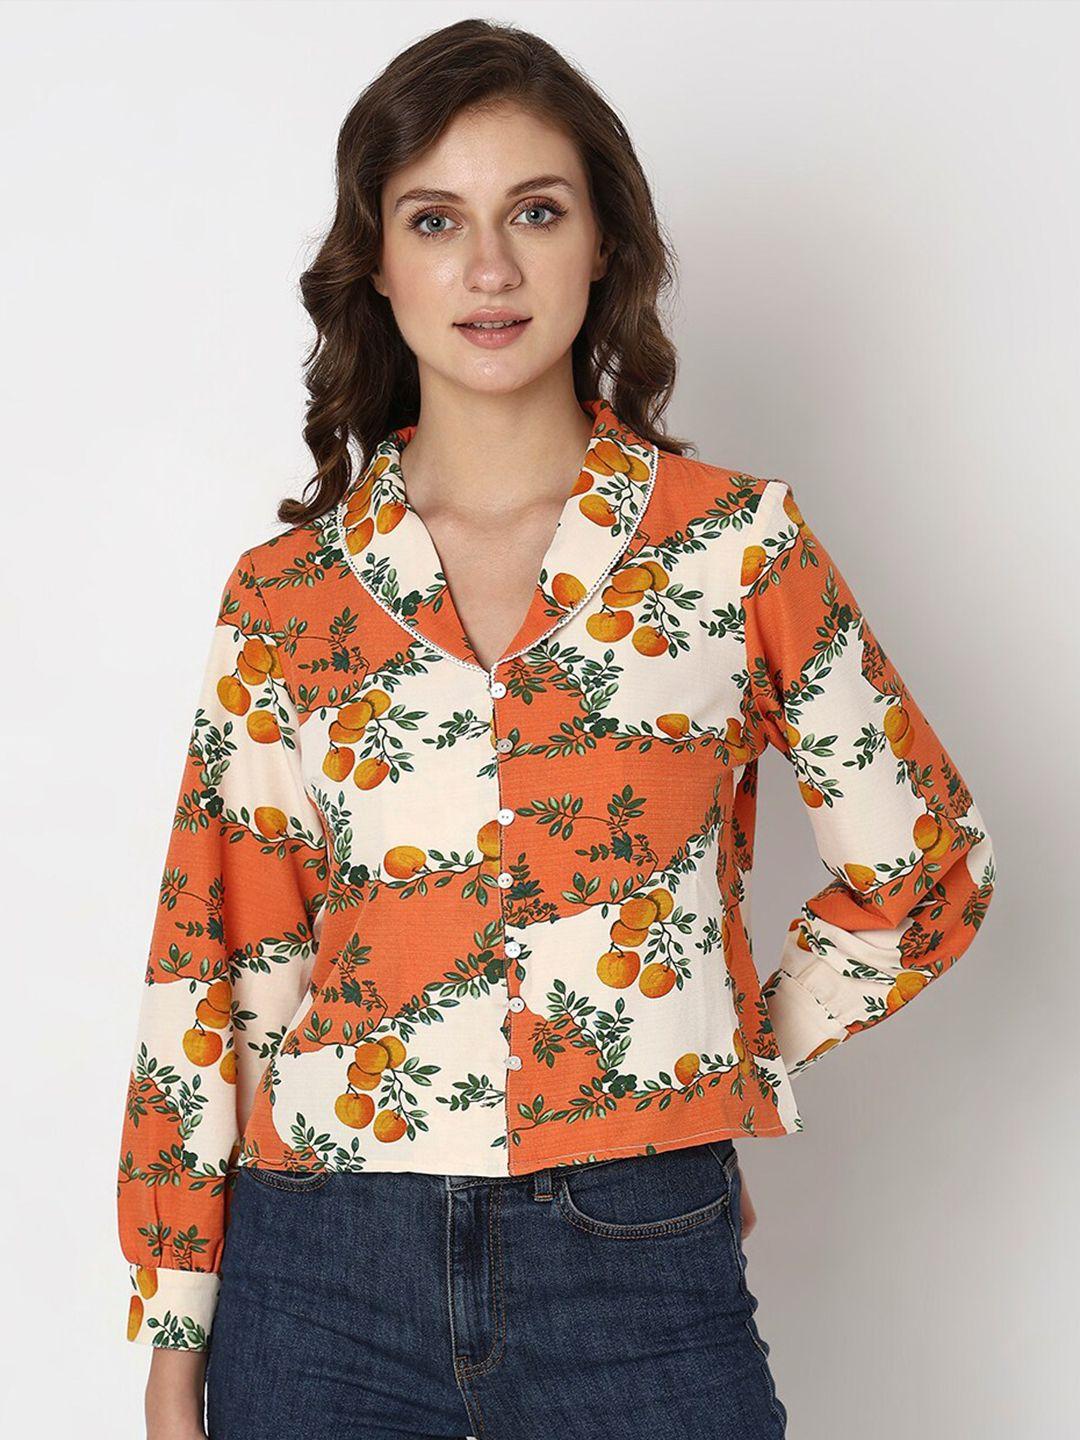 vero-moda-floral-opaque-printed-casual-shirt